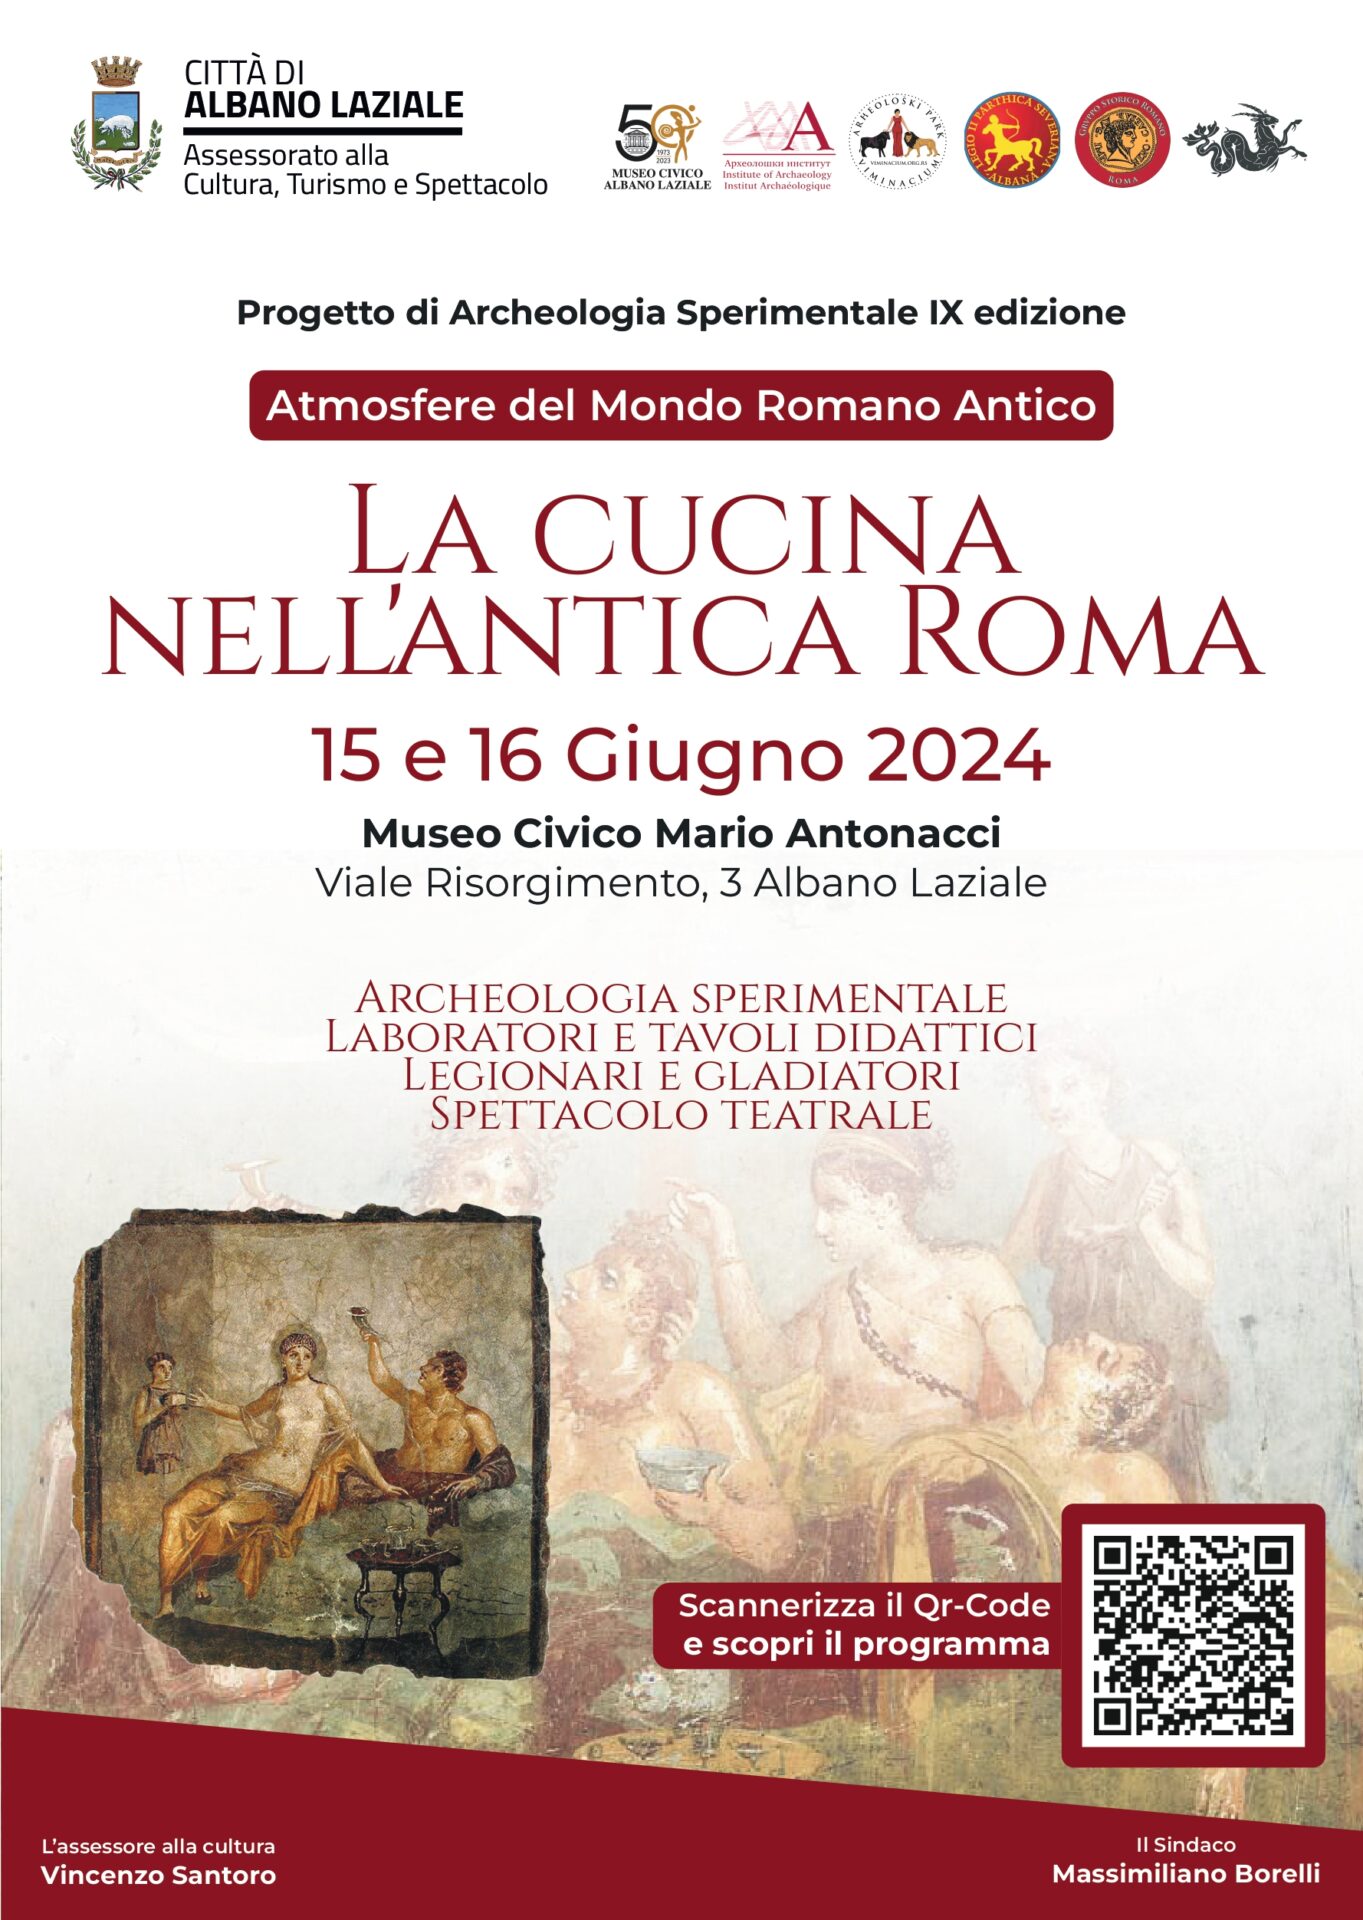 "Atmosfere del Mondo Romano Antico": la suggestiva rievocazione storica ad Albano Laziale